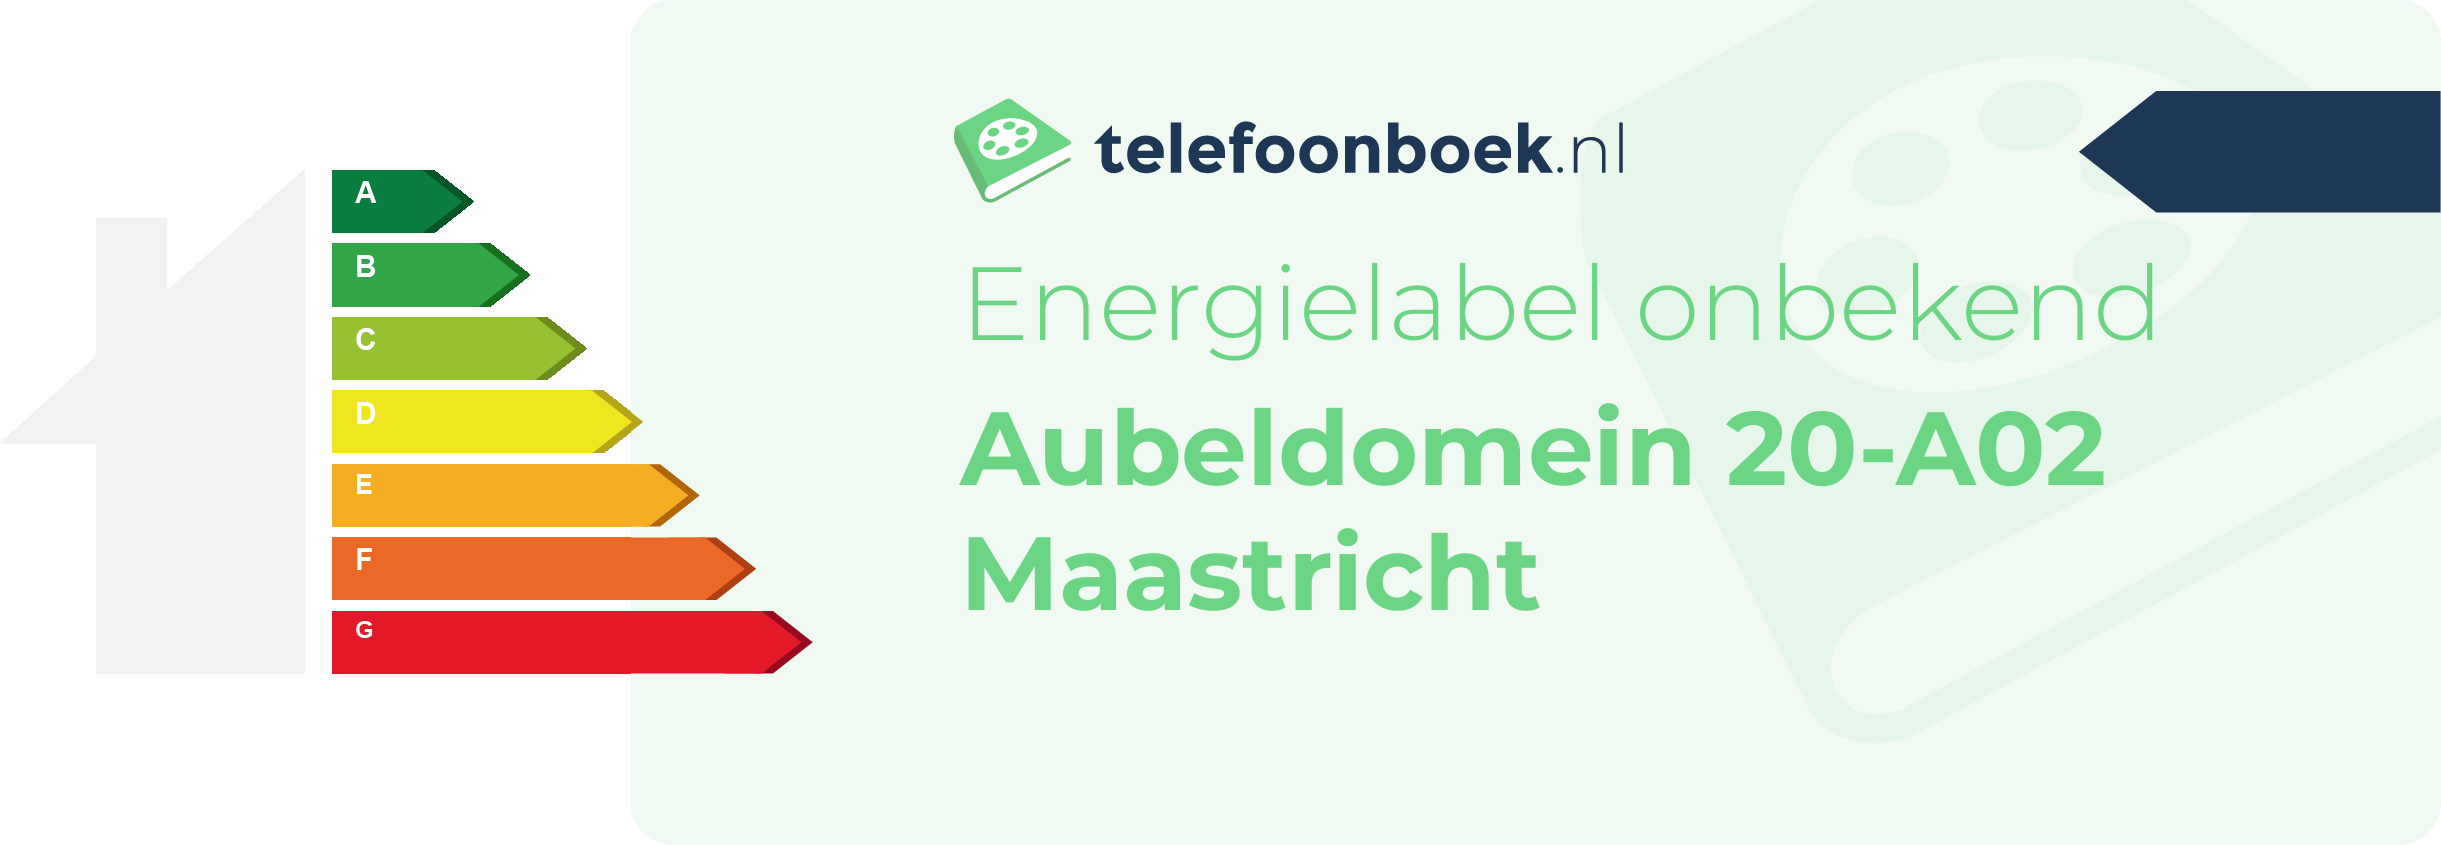 Energielabel Aubeldomein 20-A02 Maastricht